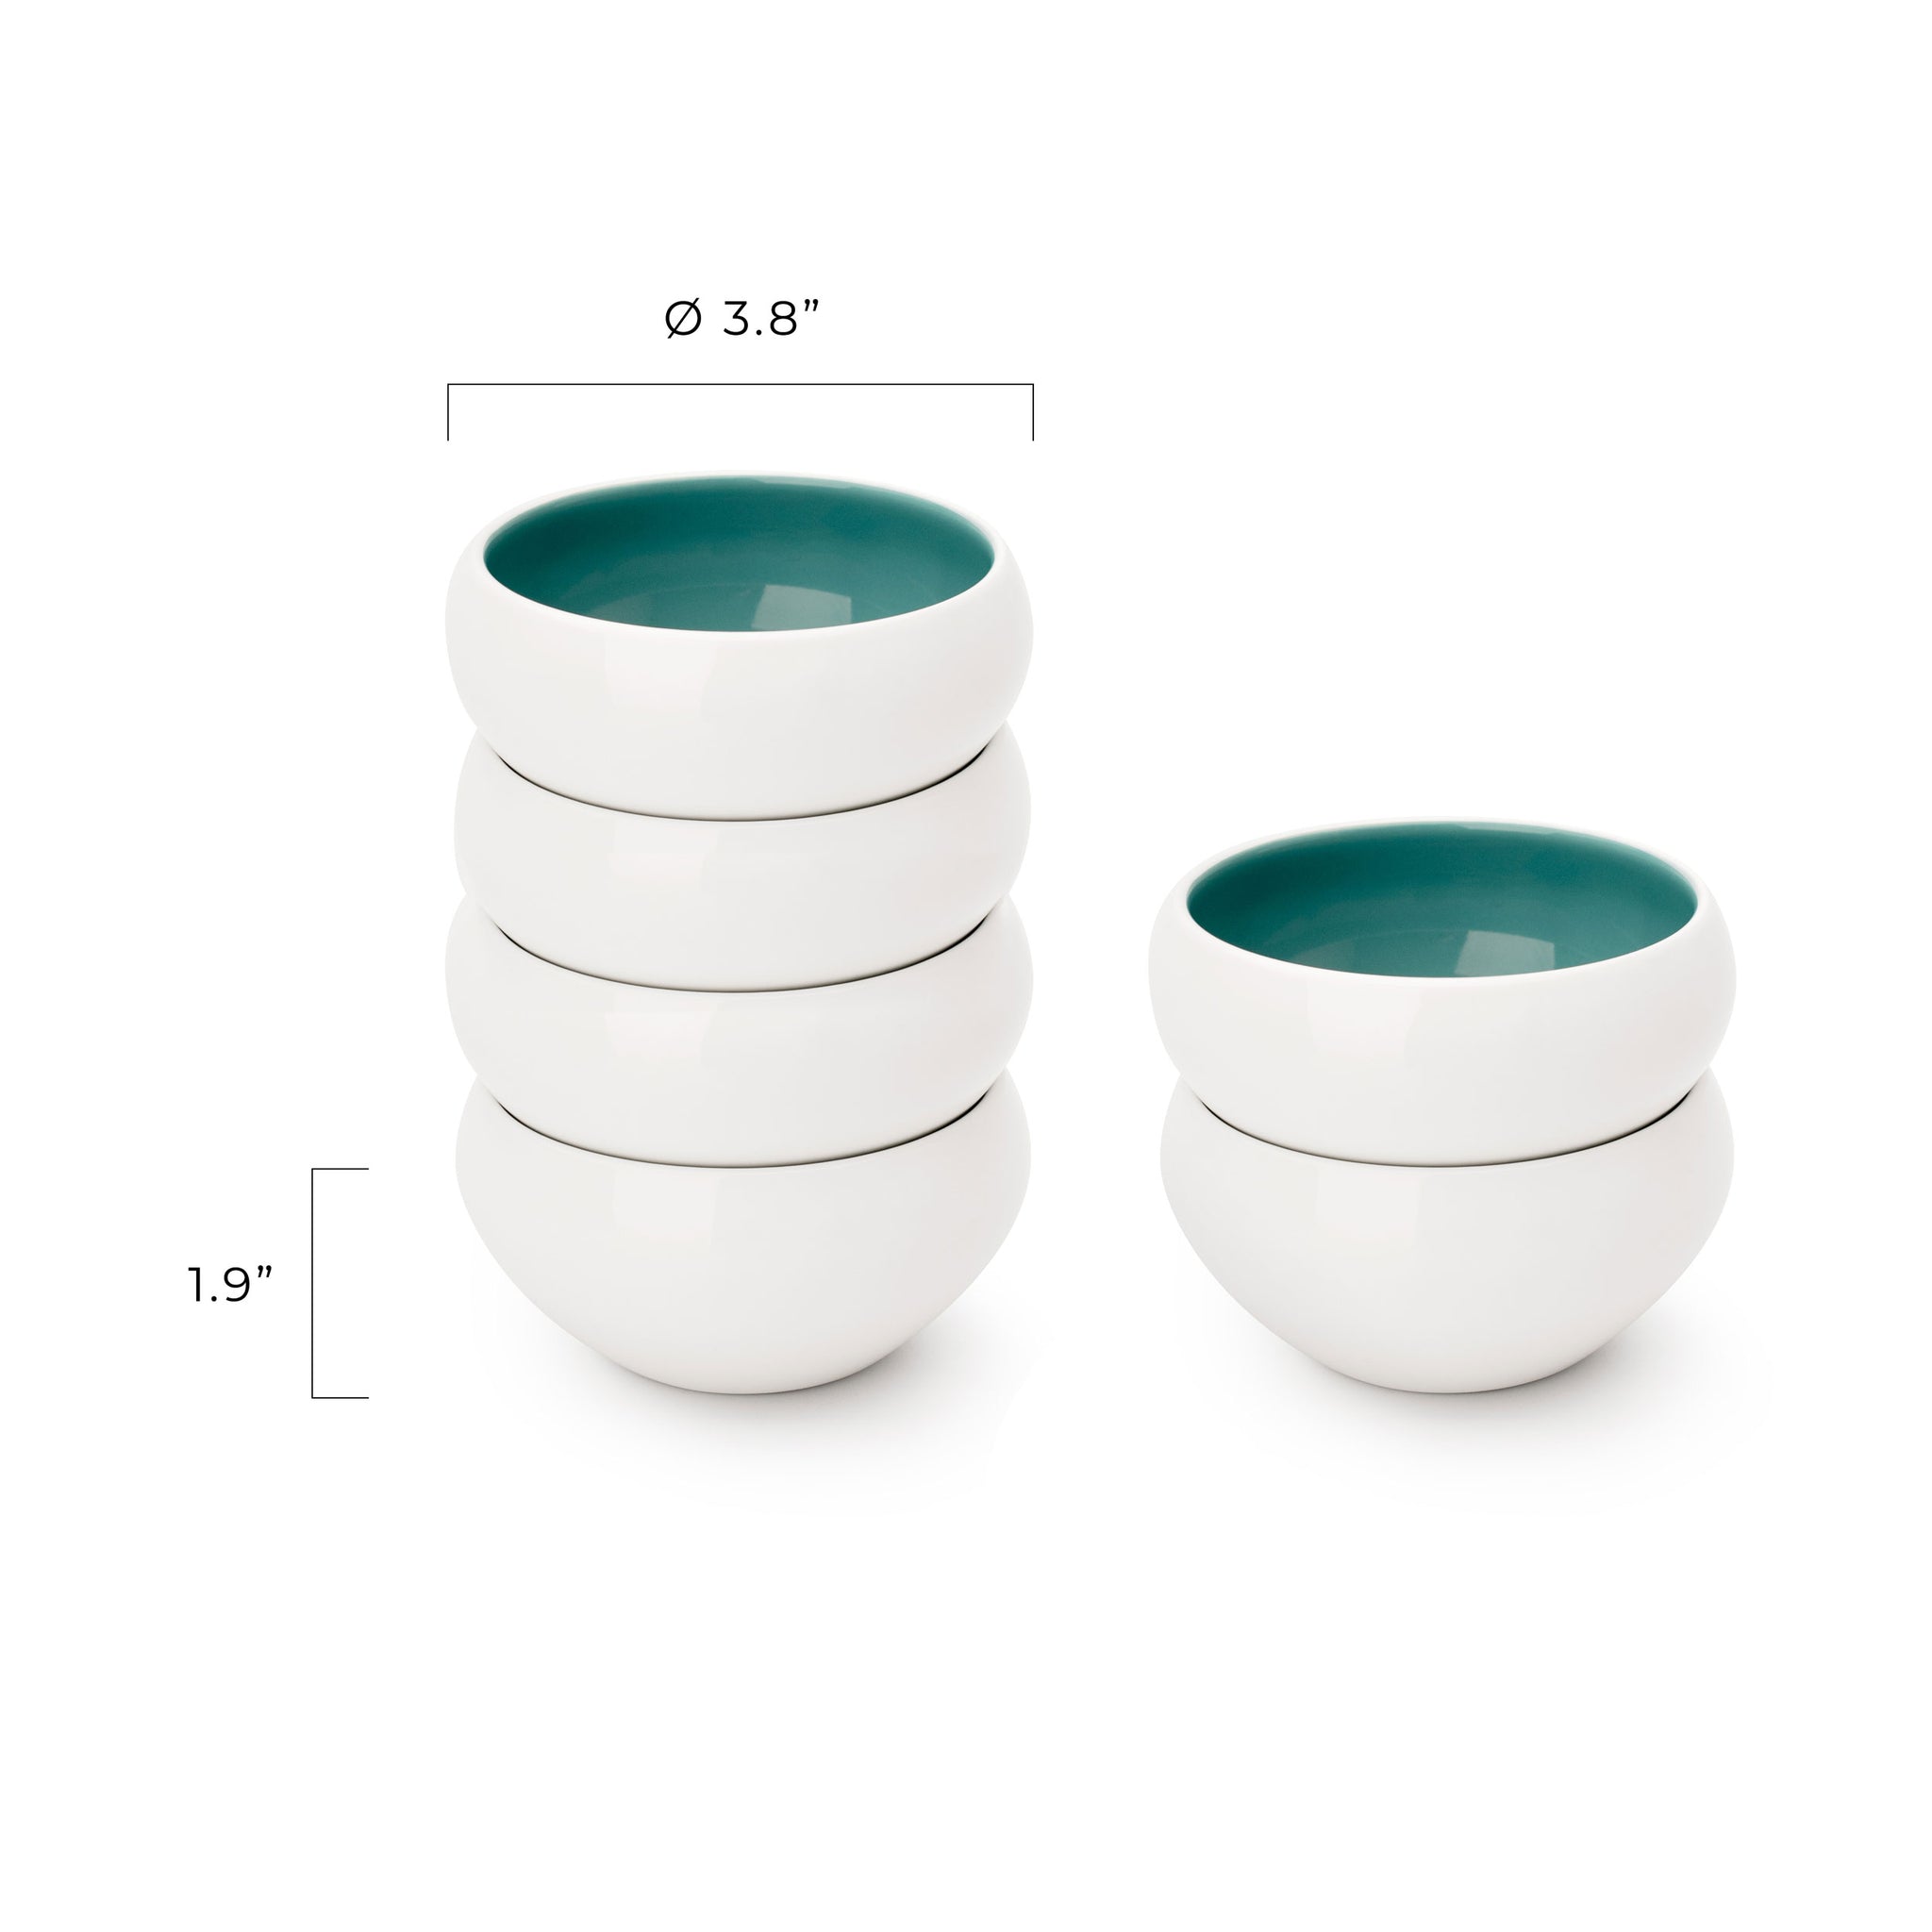 Porcelain Ramekins Set Of 6 - Bowls for Creme Brulee, Baking